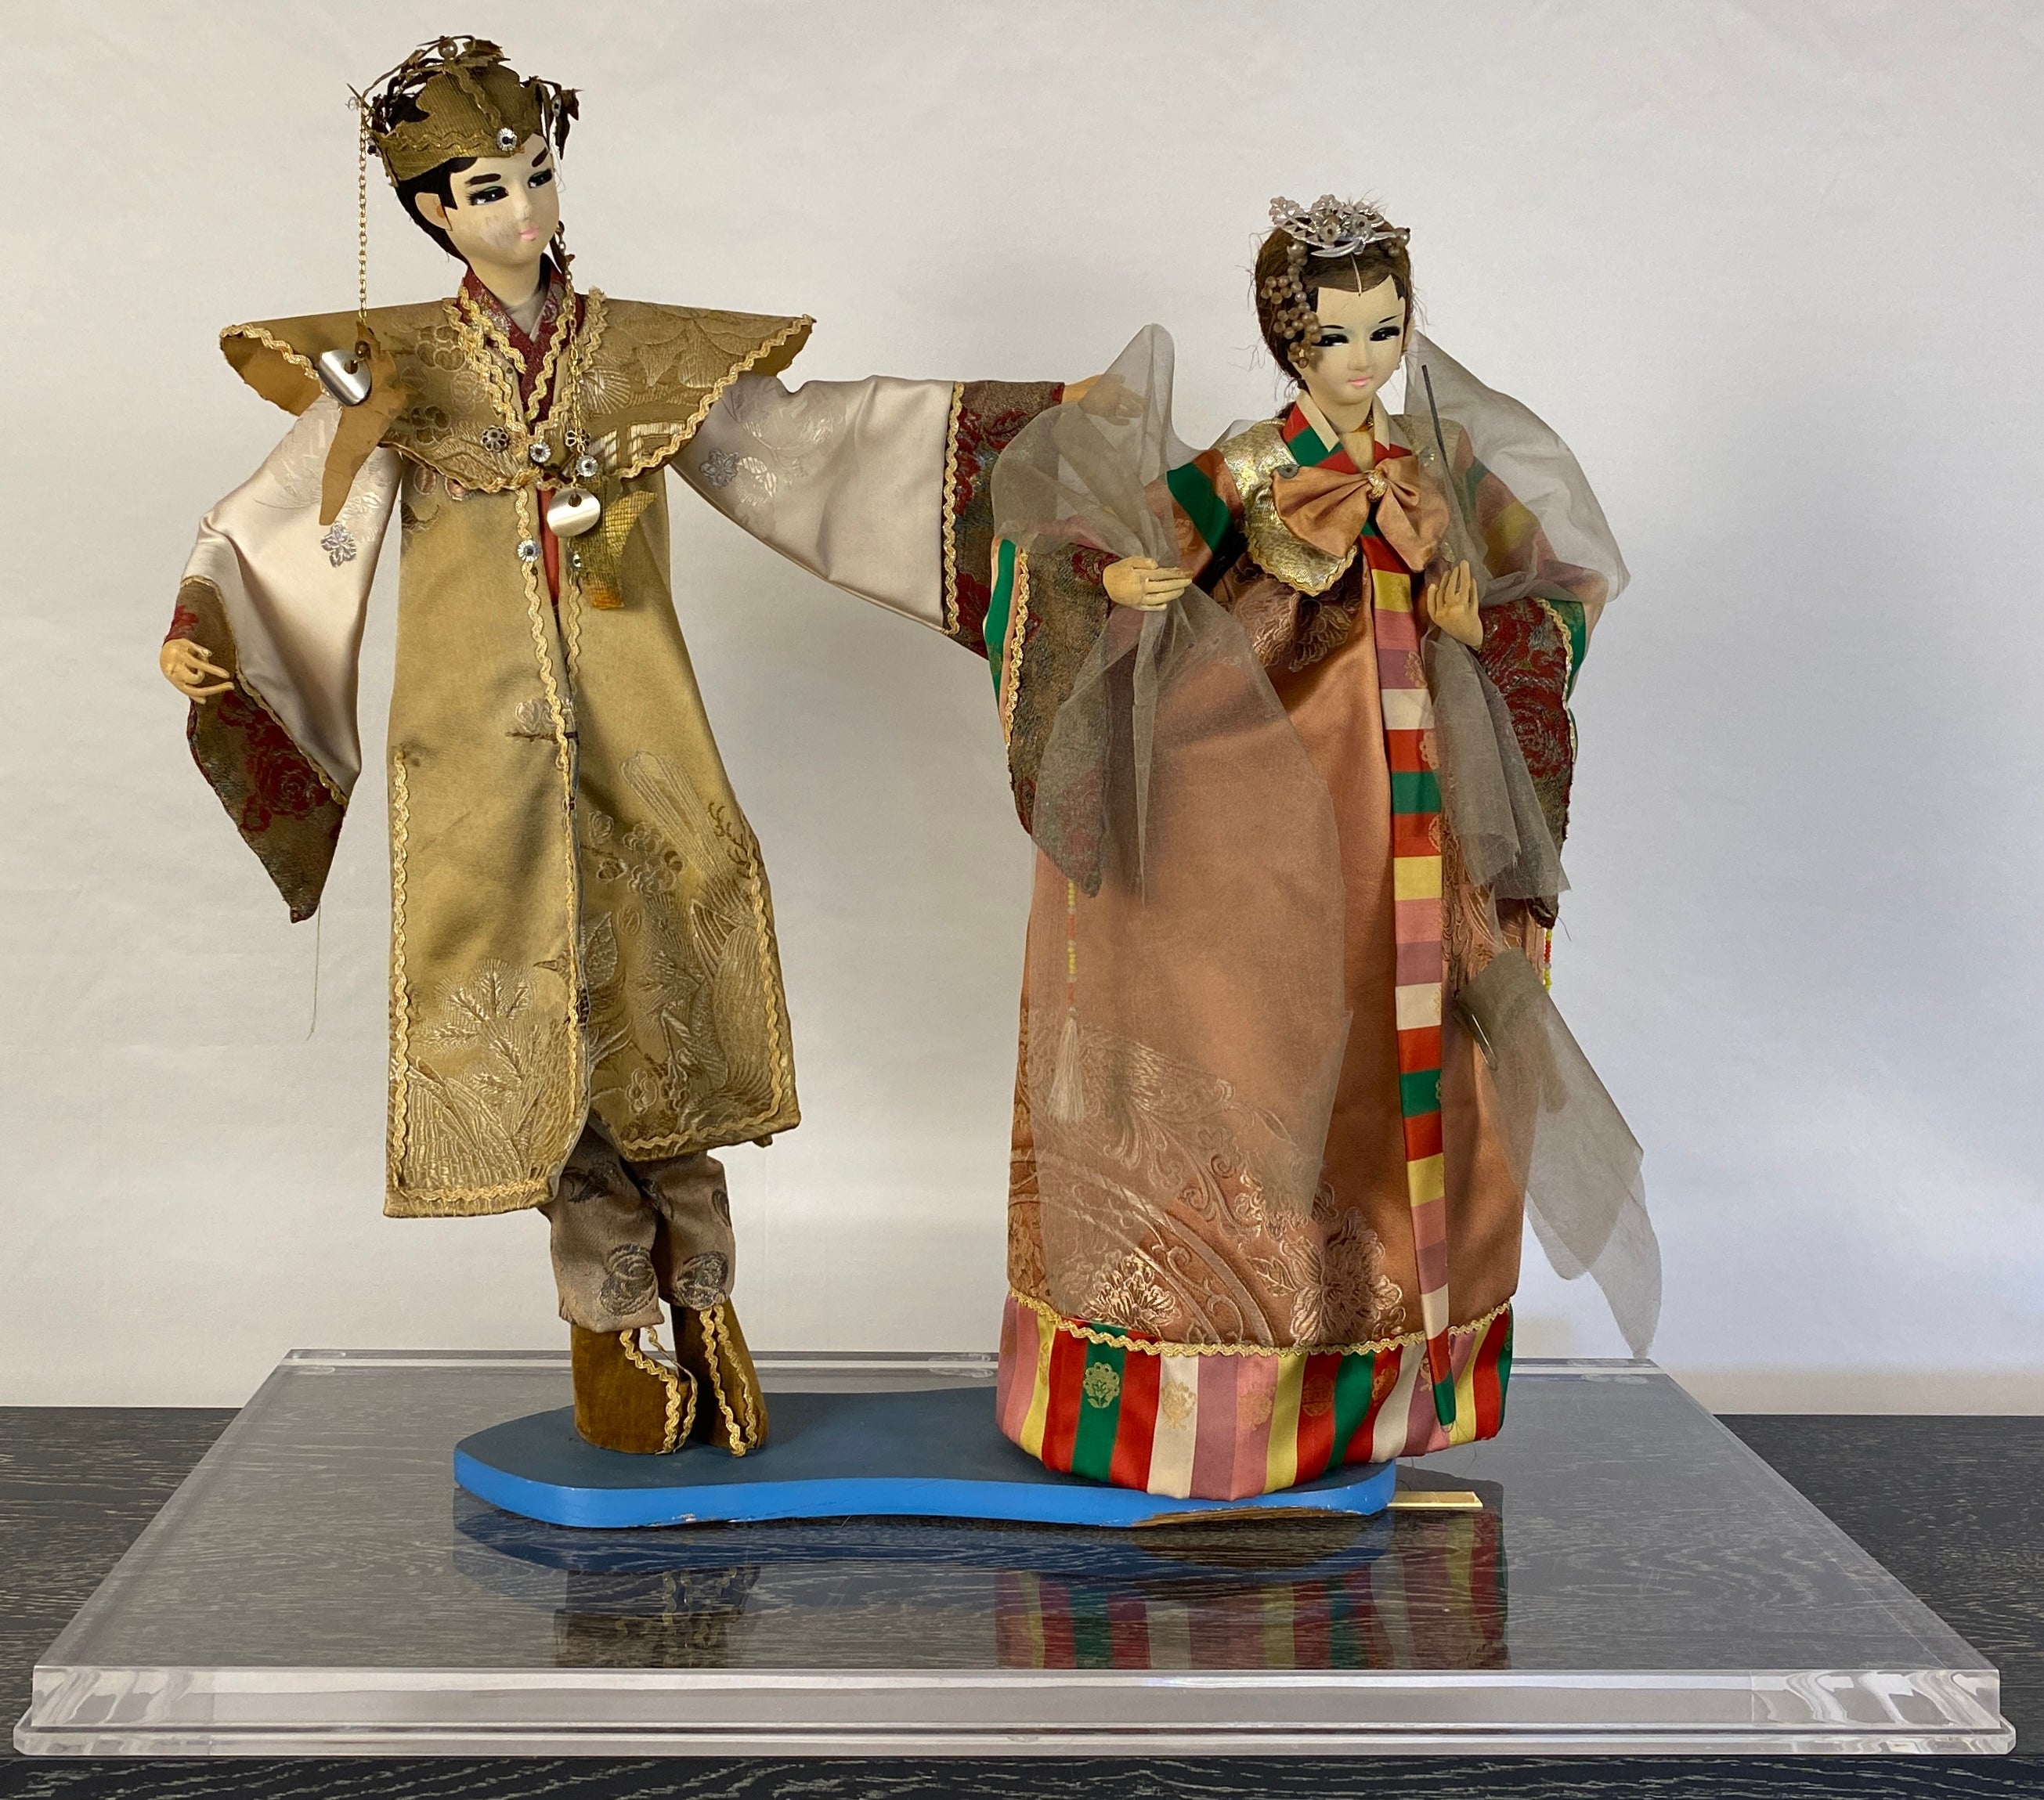 Paire de poupées marionnettes orientales du 20e siècle de belle qualité, avec leurs costumes d'origine.

Ces marionnettes orientales décoratives sont encadrées de lucite, ce qui permet de les exposer facilement sur une table, une console ou une